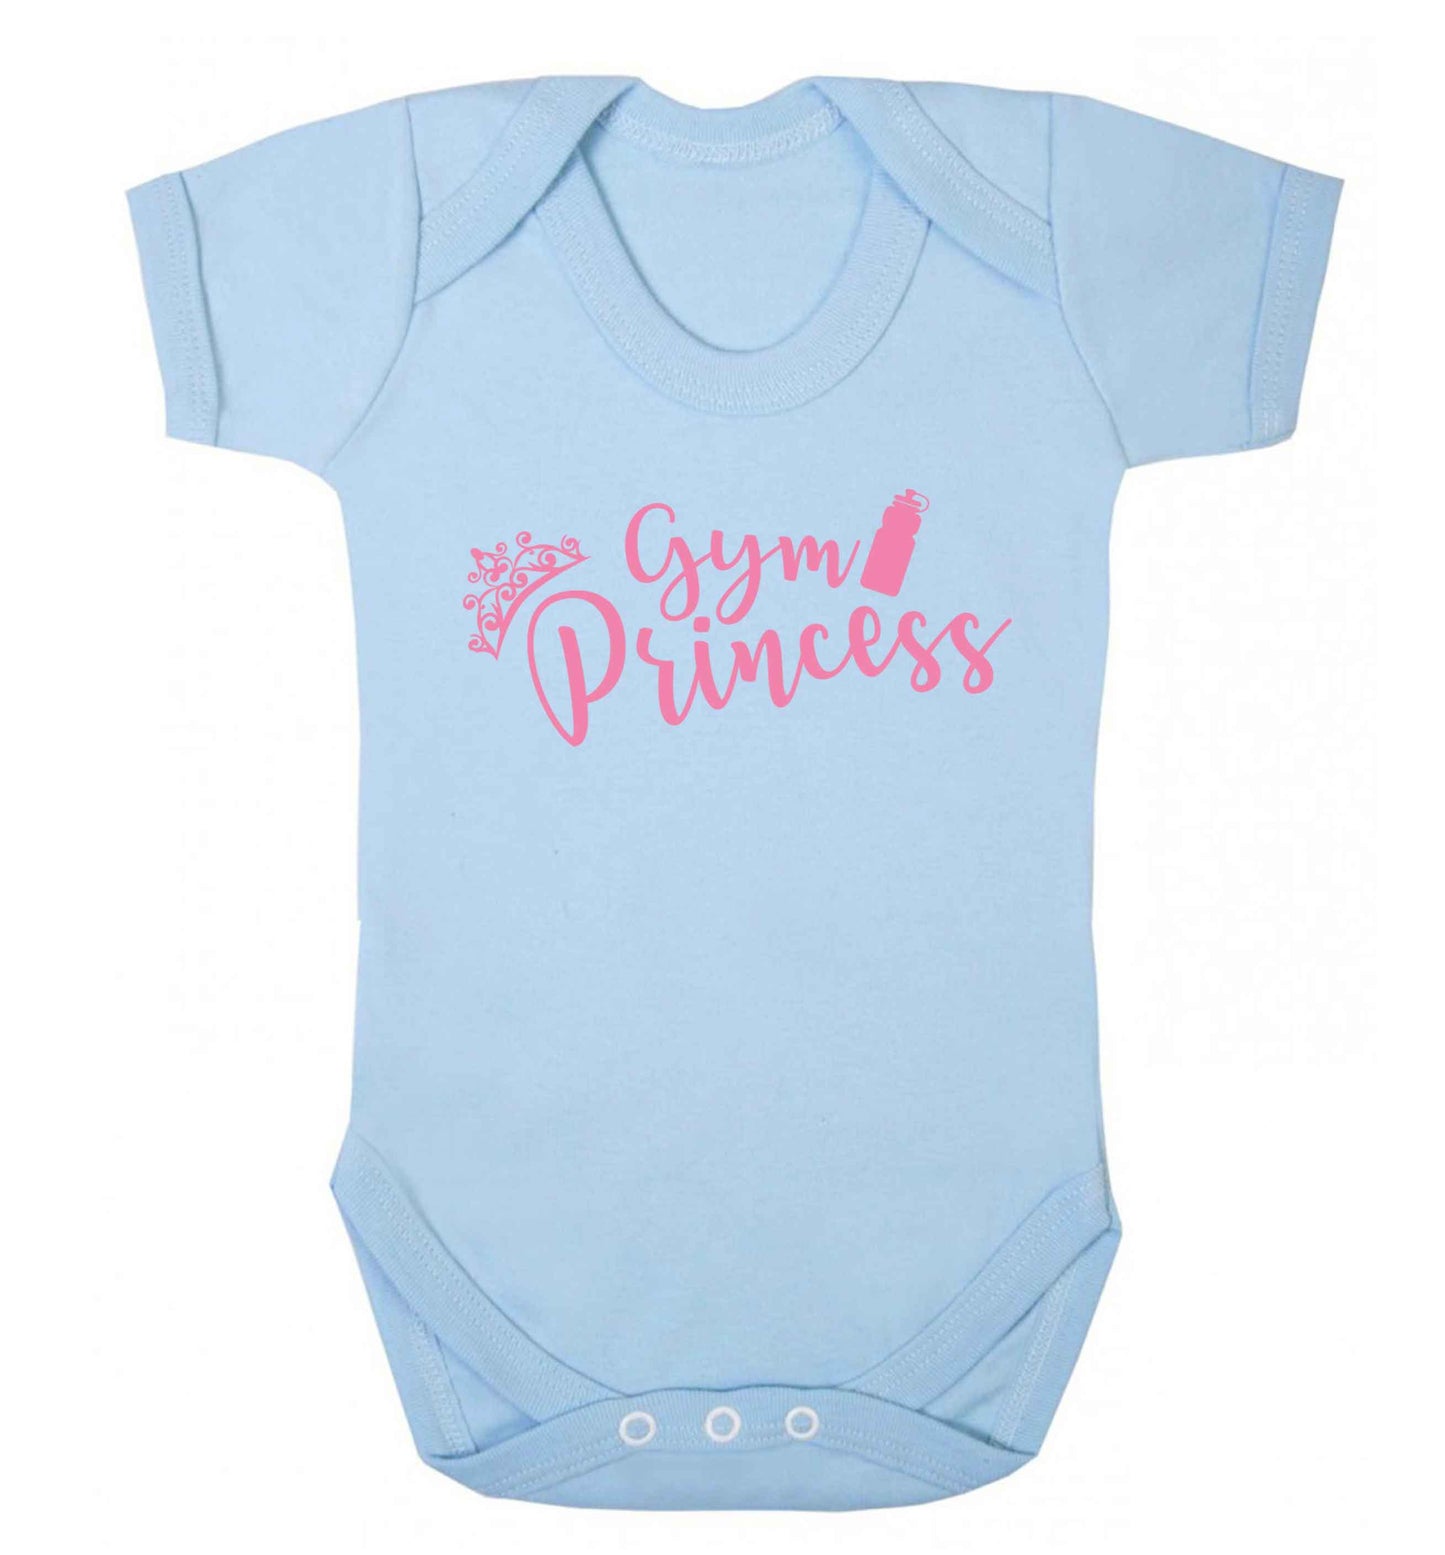 Gym princess Baby Vest pale blue 18-24 months